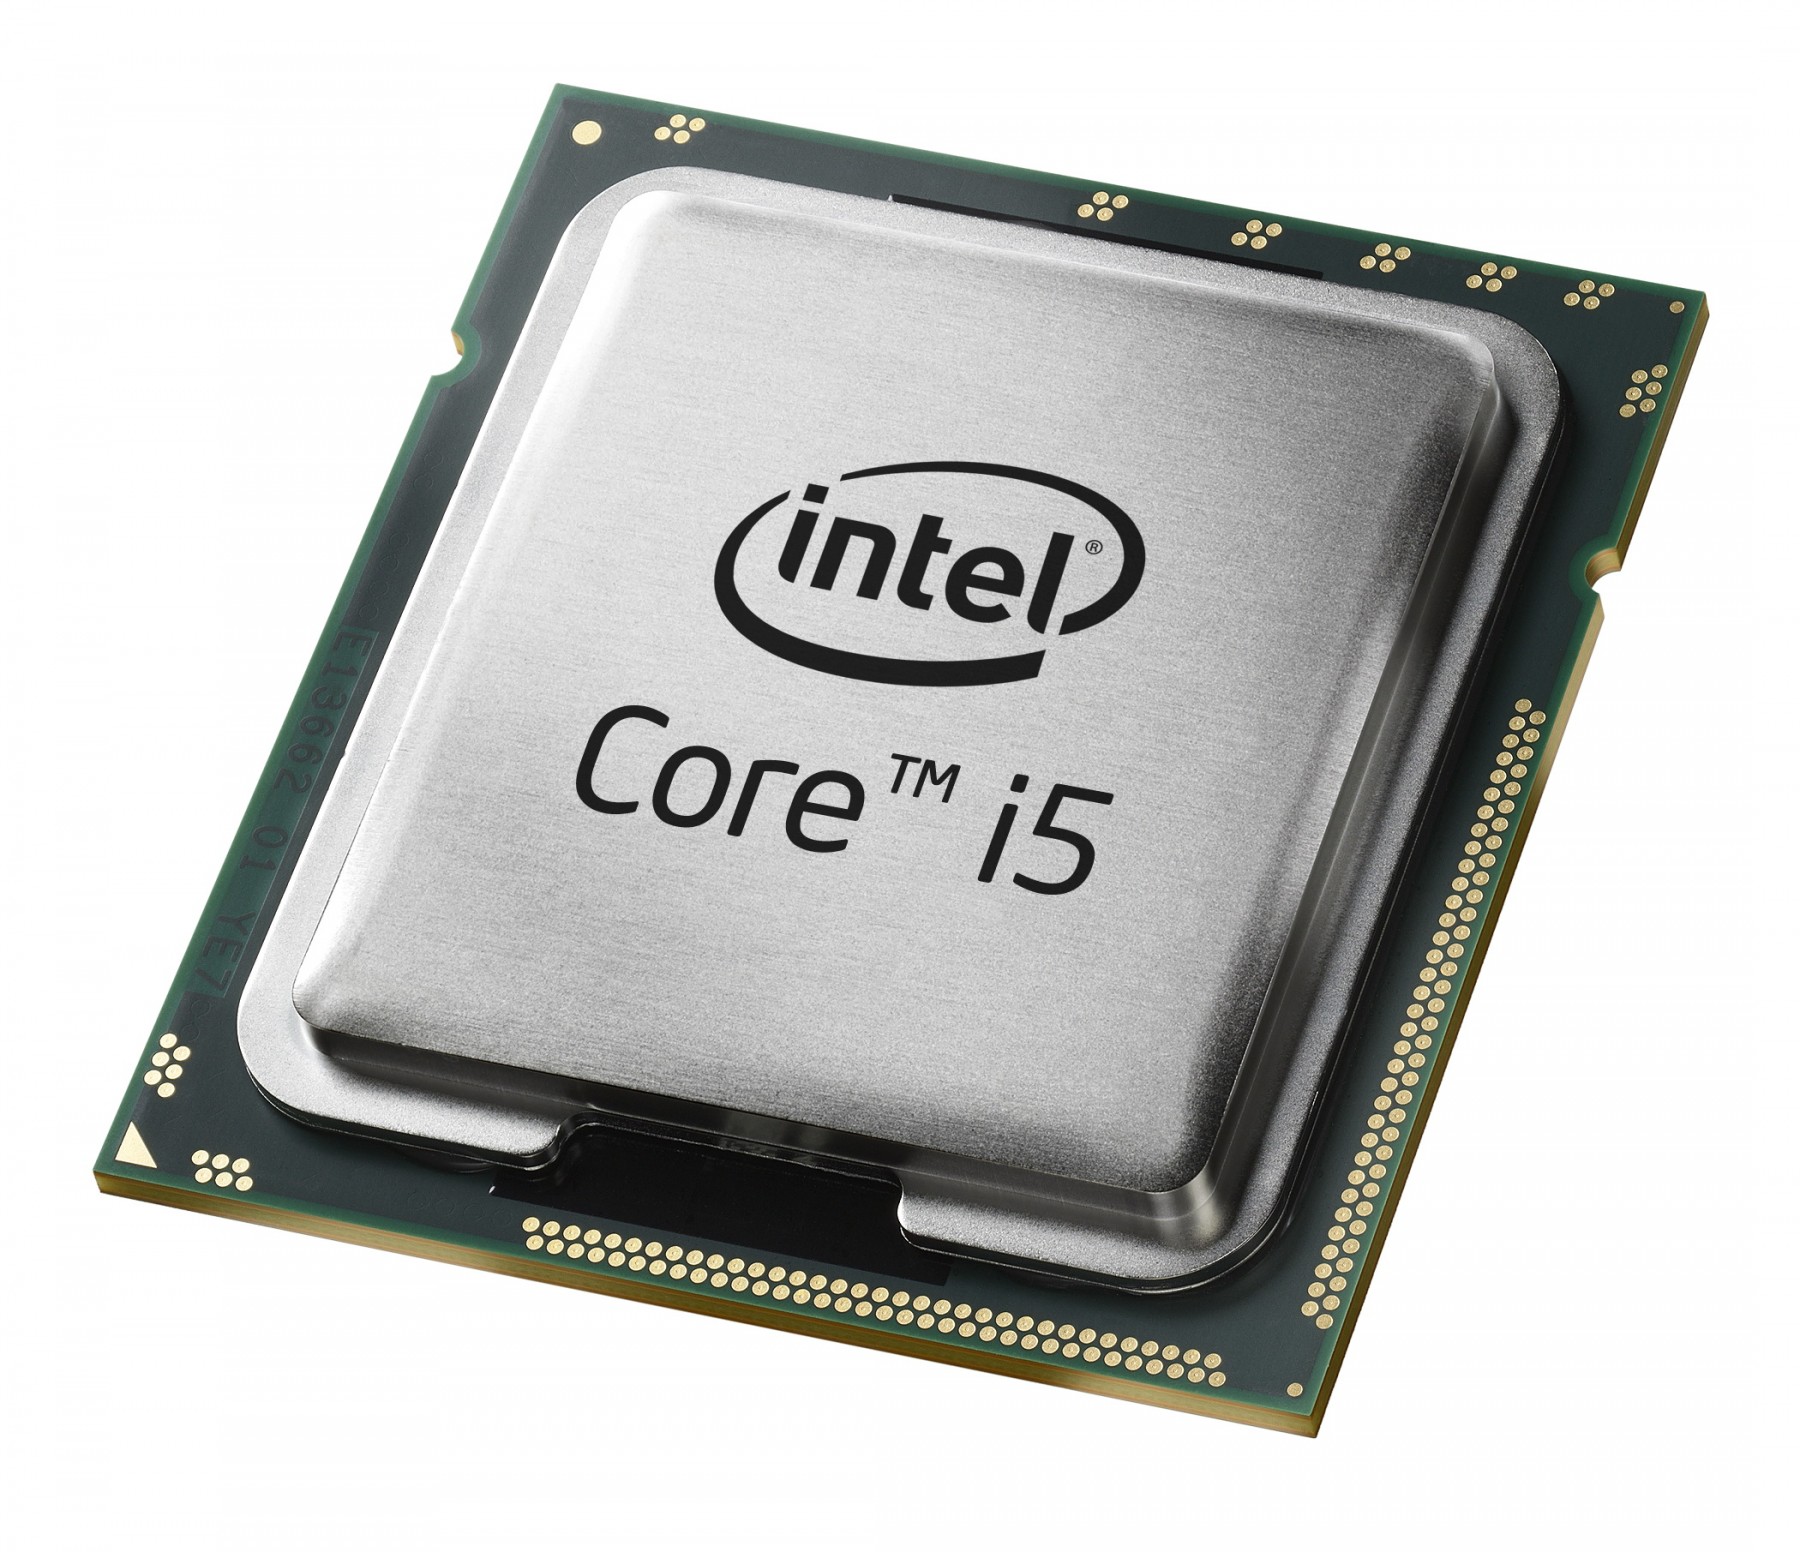 500030158-Intel Core i5-3230M SR0WX 2.6Ghz 5GT/s BGA 1023 Processor-image